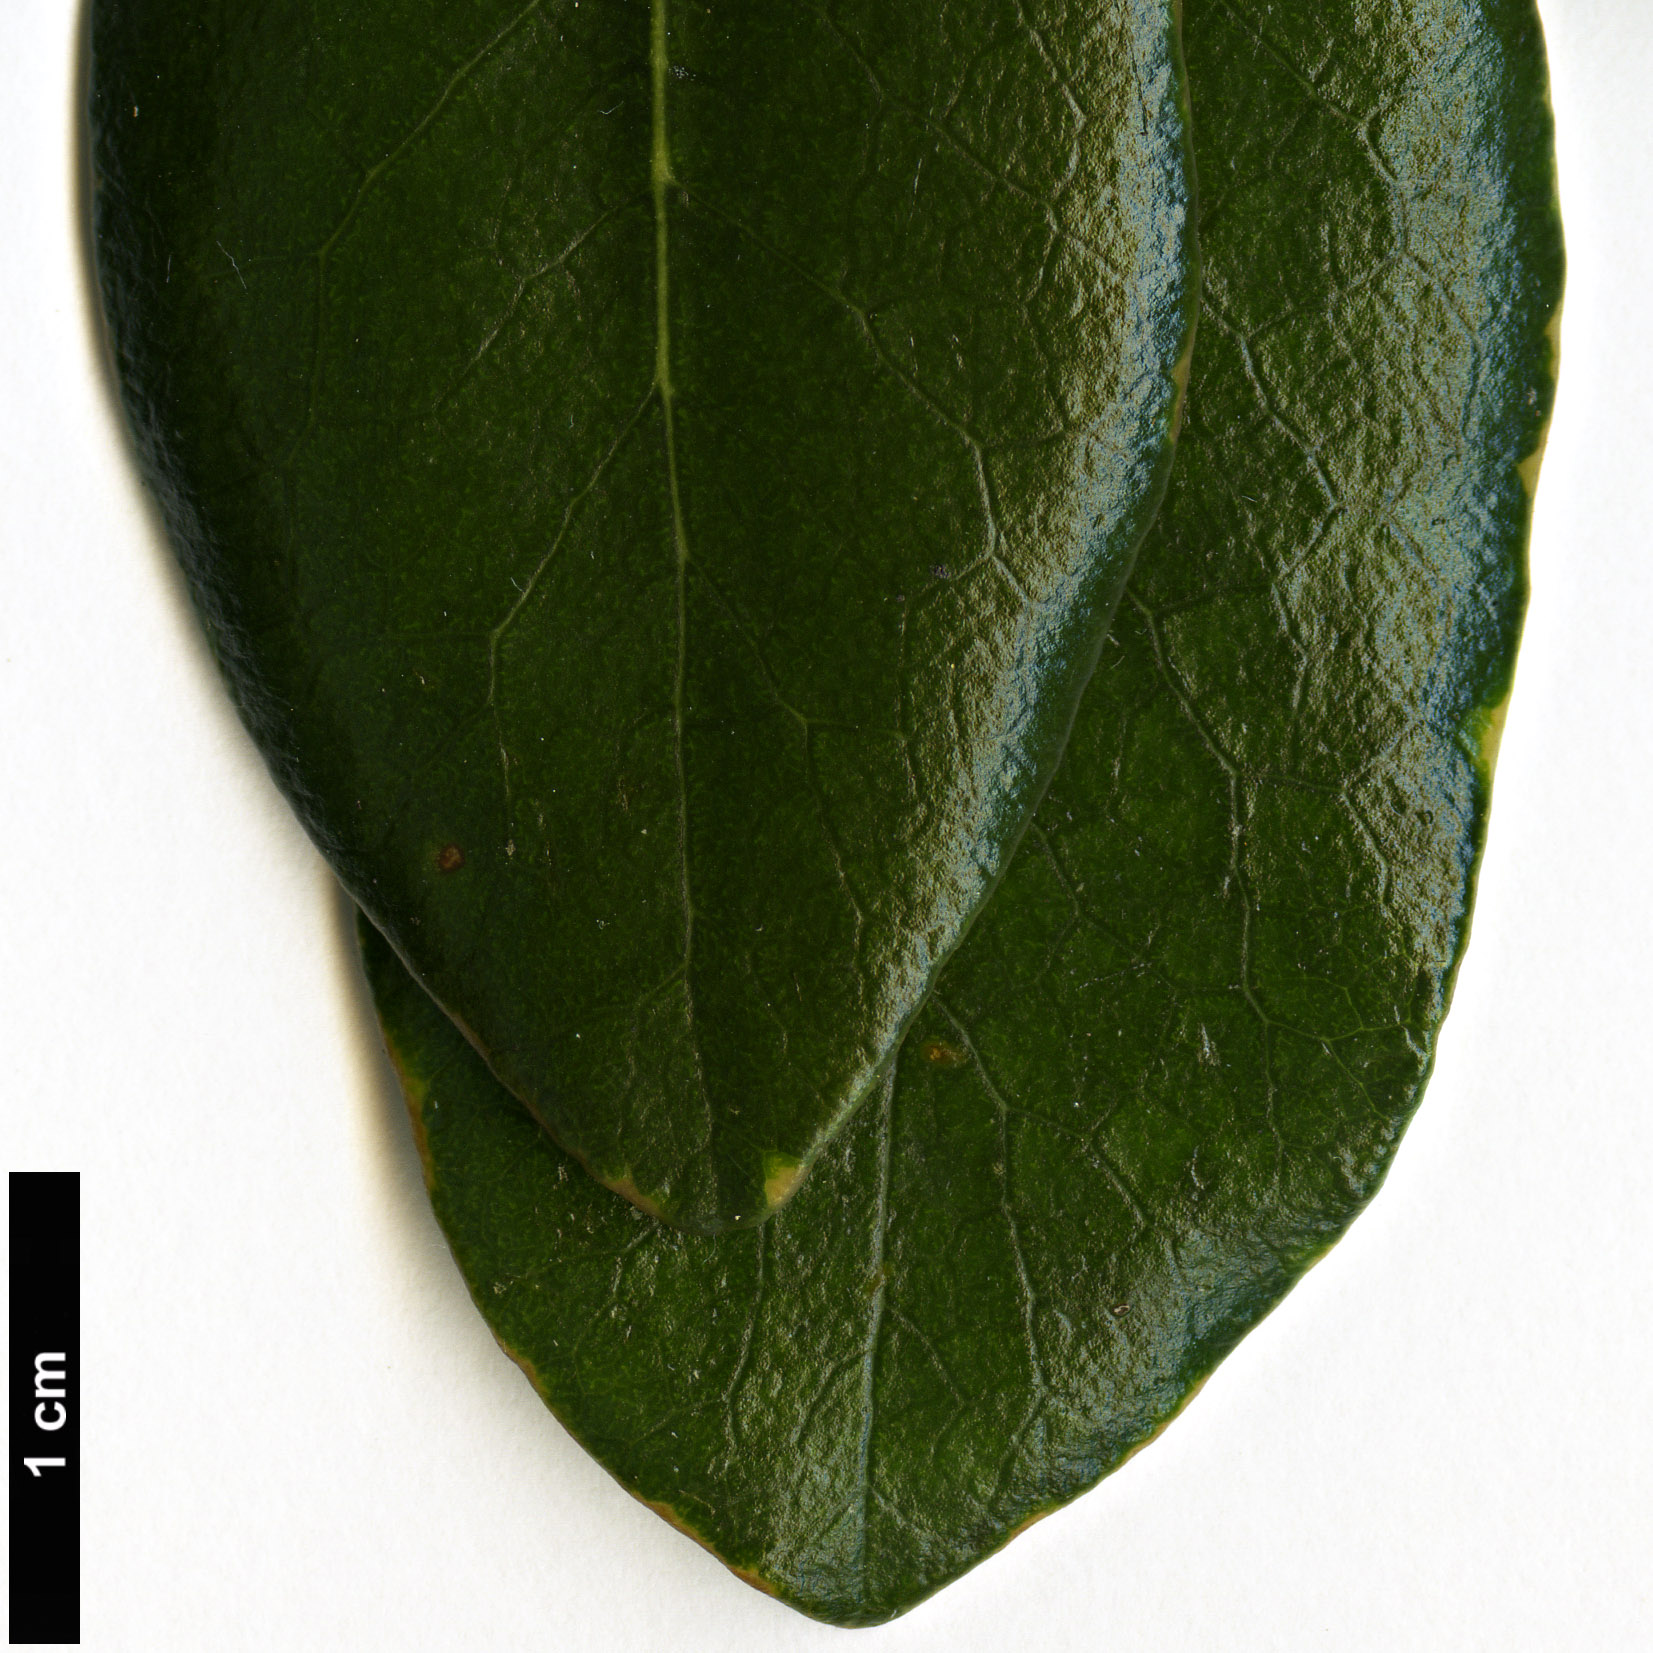 High resolution image: Family: Pittosporaceae - Genus: Pittosporum - Taxon: fairchildii